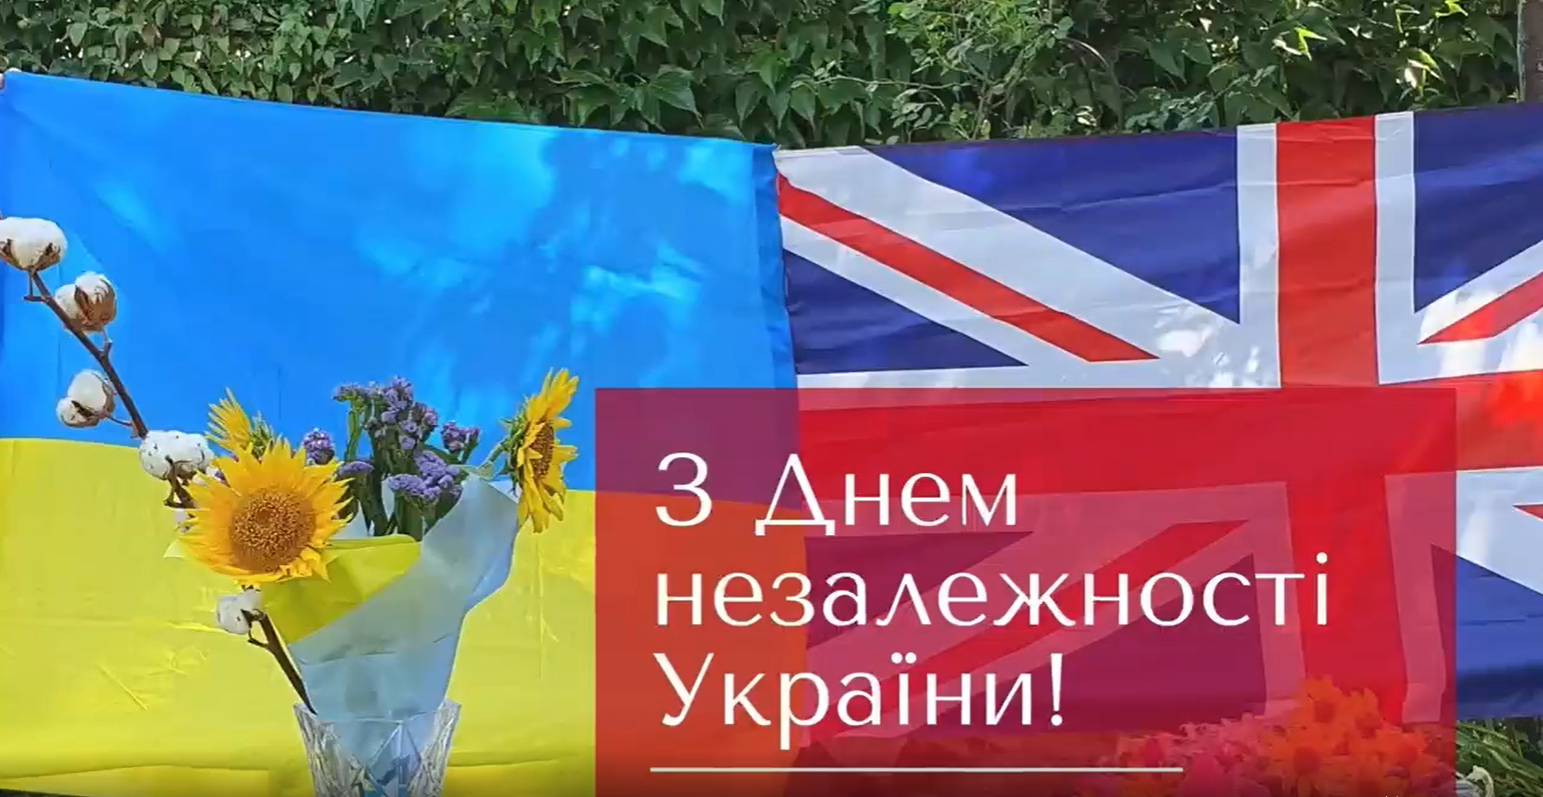 Посол Британии в Украине составила букет подсолнухов и хлопка, поздравляя украинцев с Днем Независимости. Видео